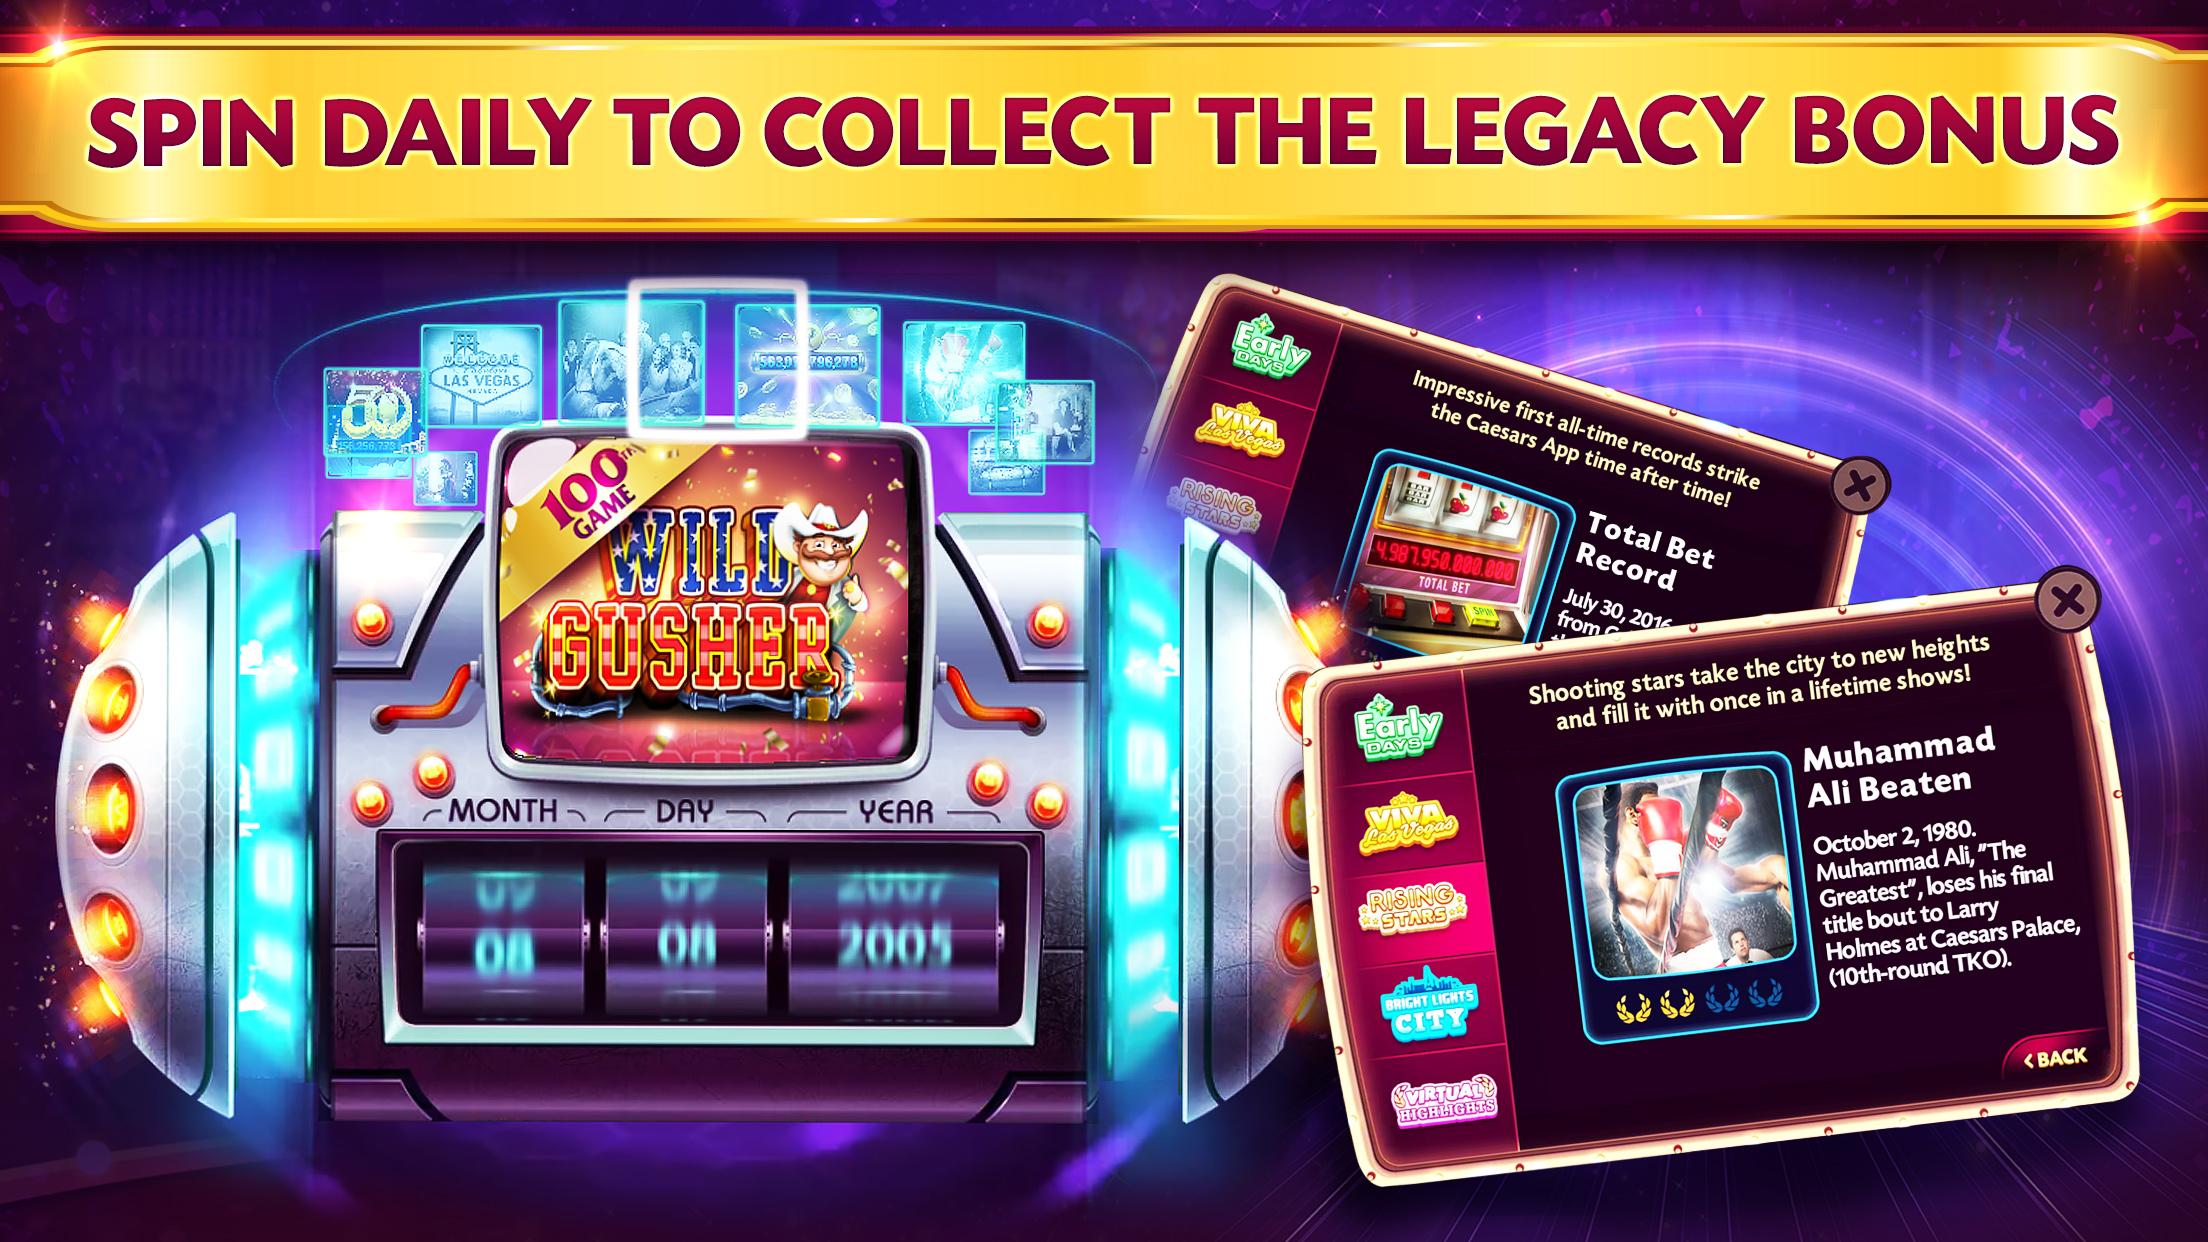 Video Casino Games Slot Machines